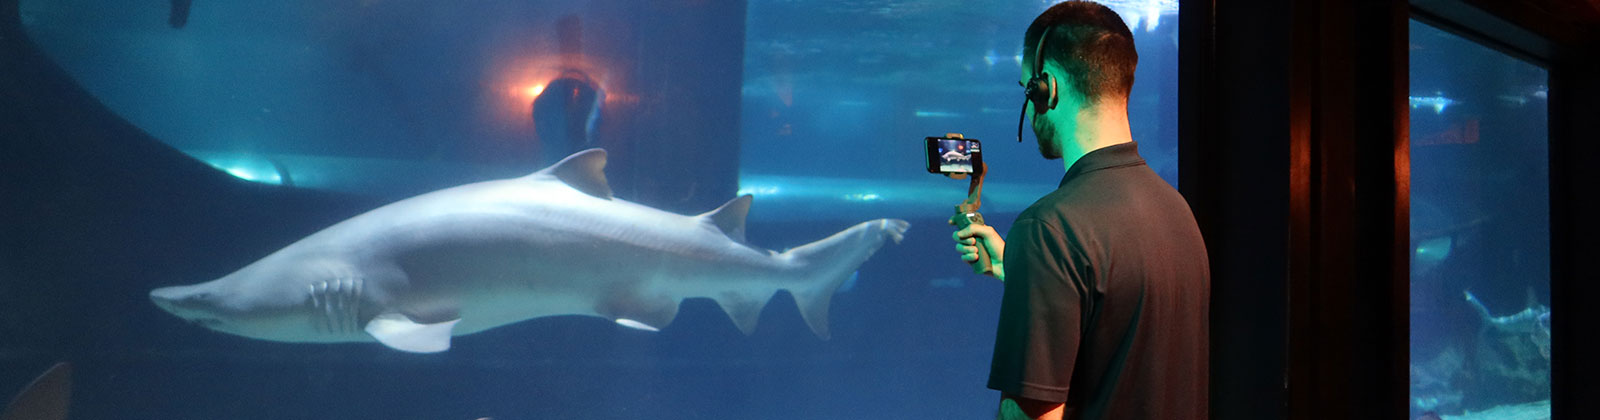 A Greater Cleveland Aquarium educator filming a sandtiger shark.